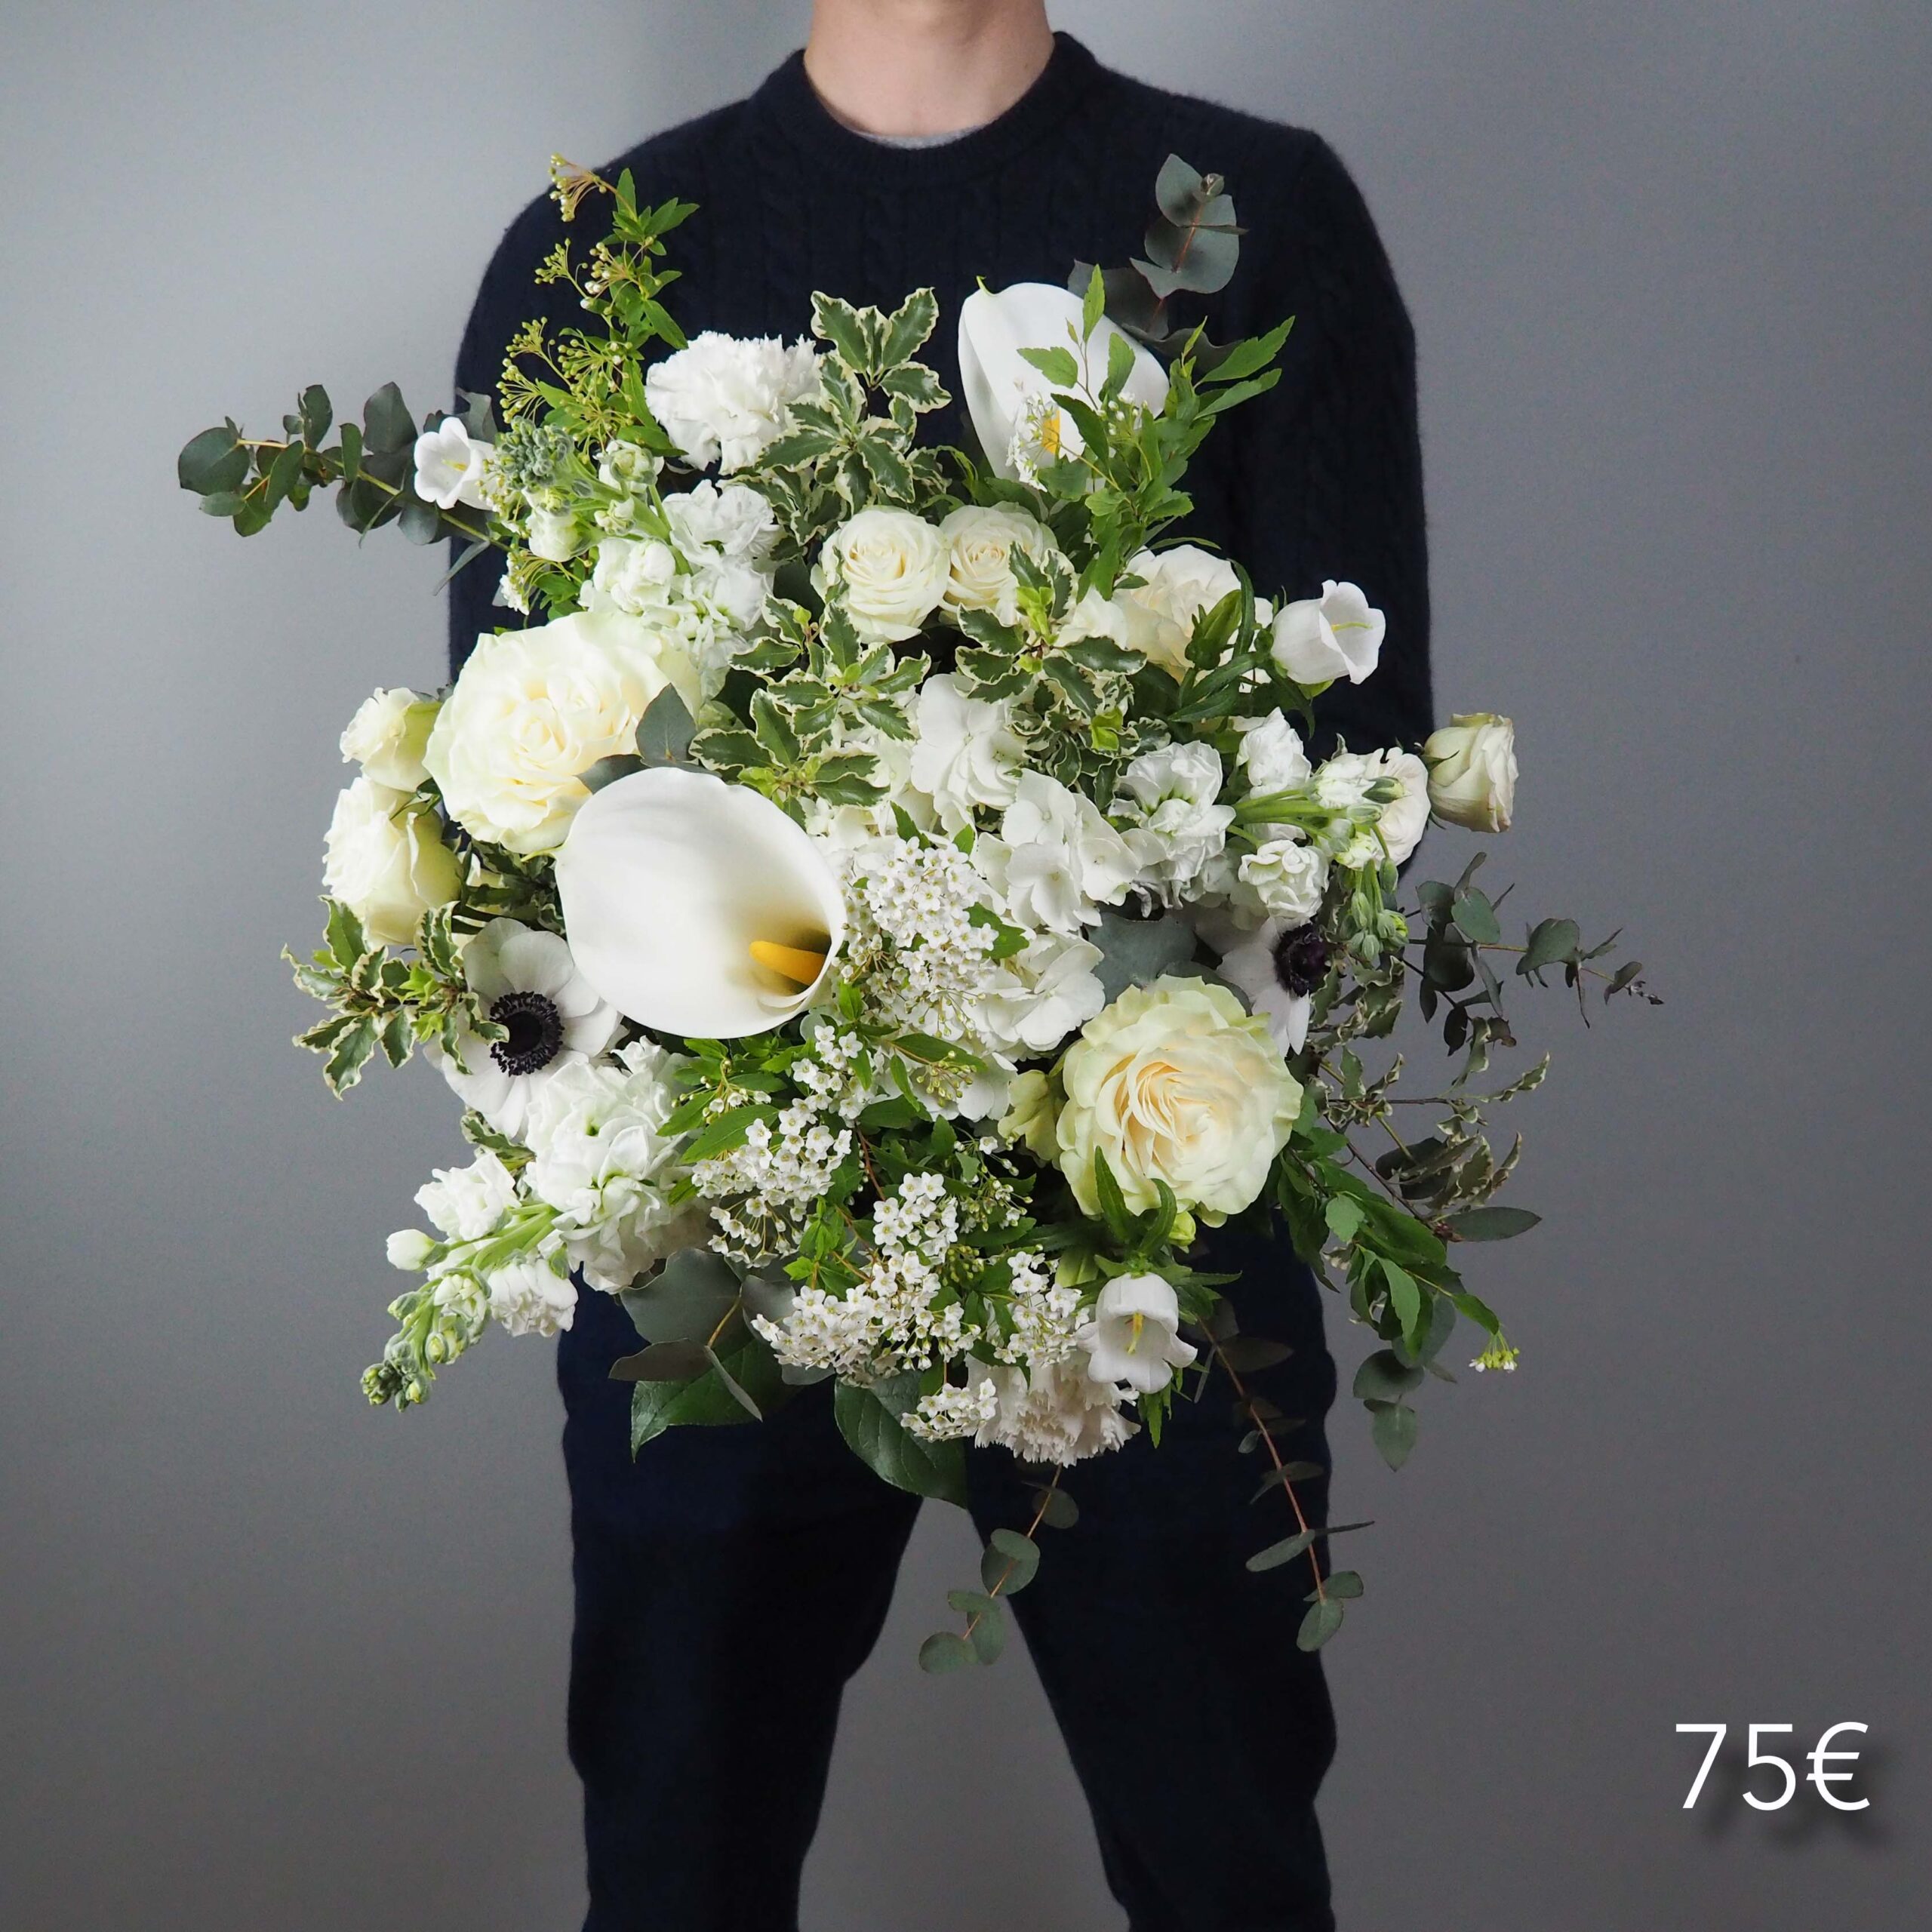 bouquet-elegance-75-atelier-lavarenne-fleuriste-lyon